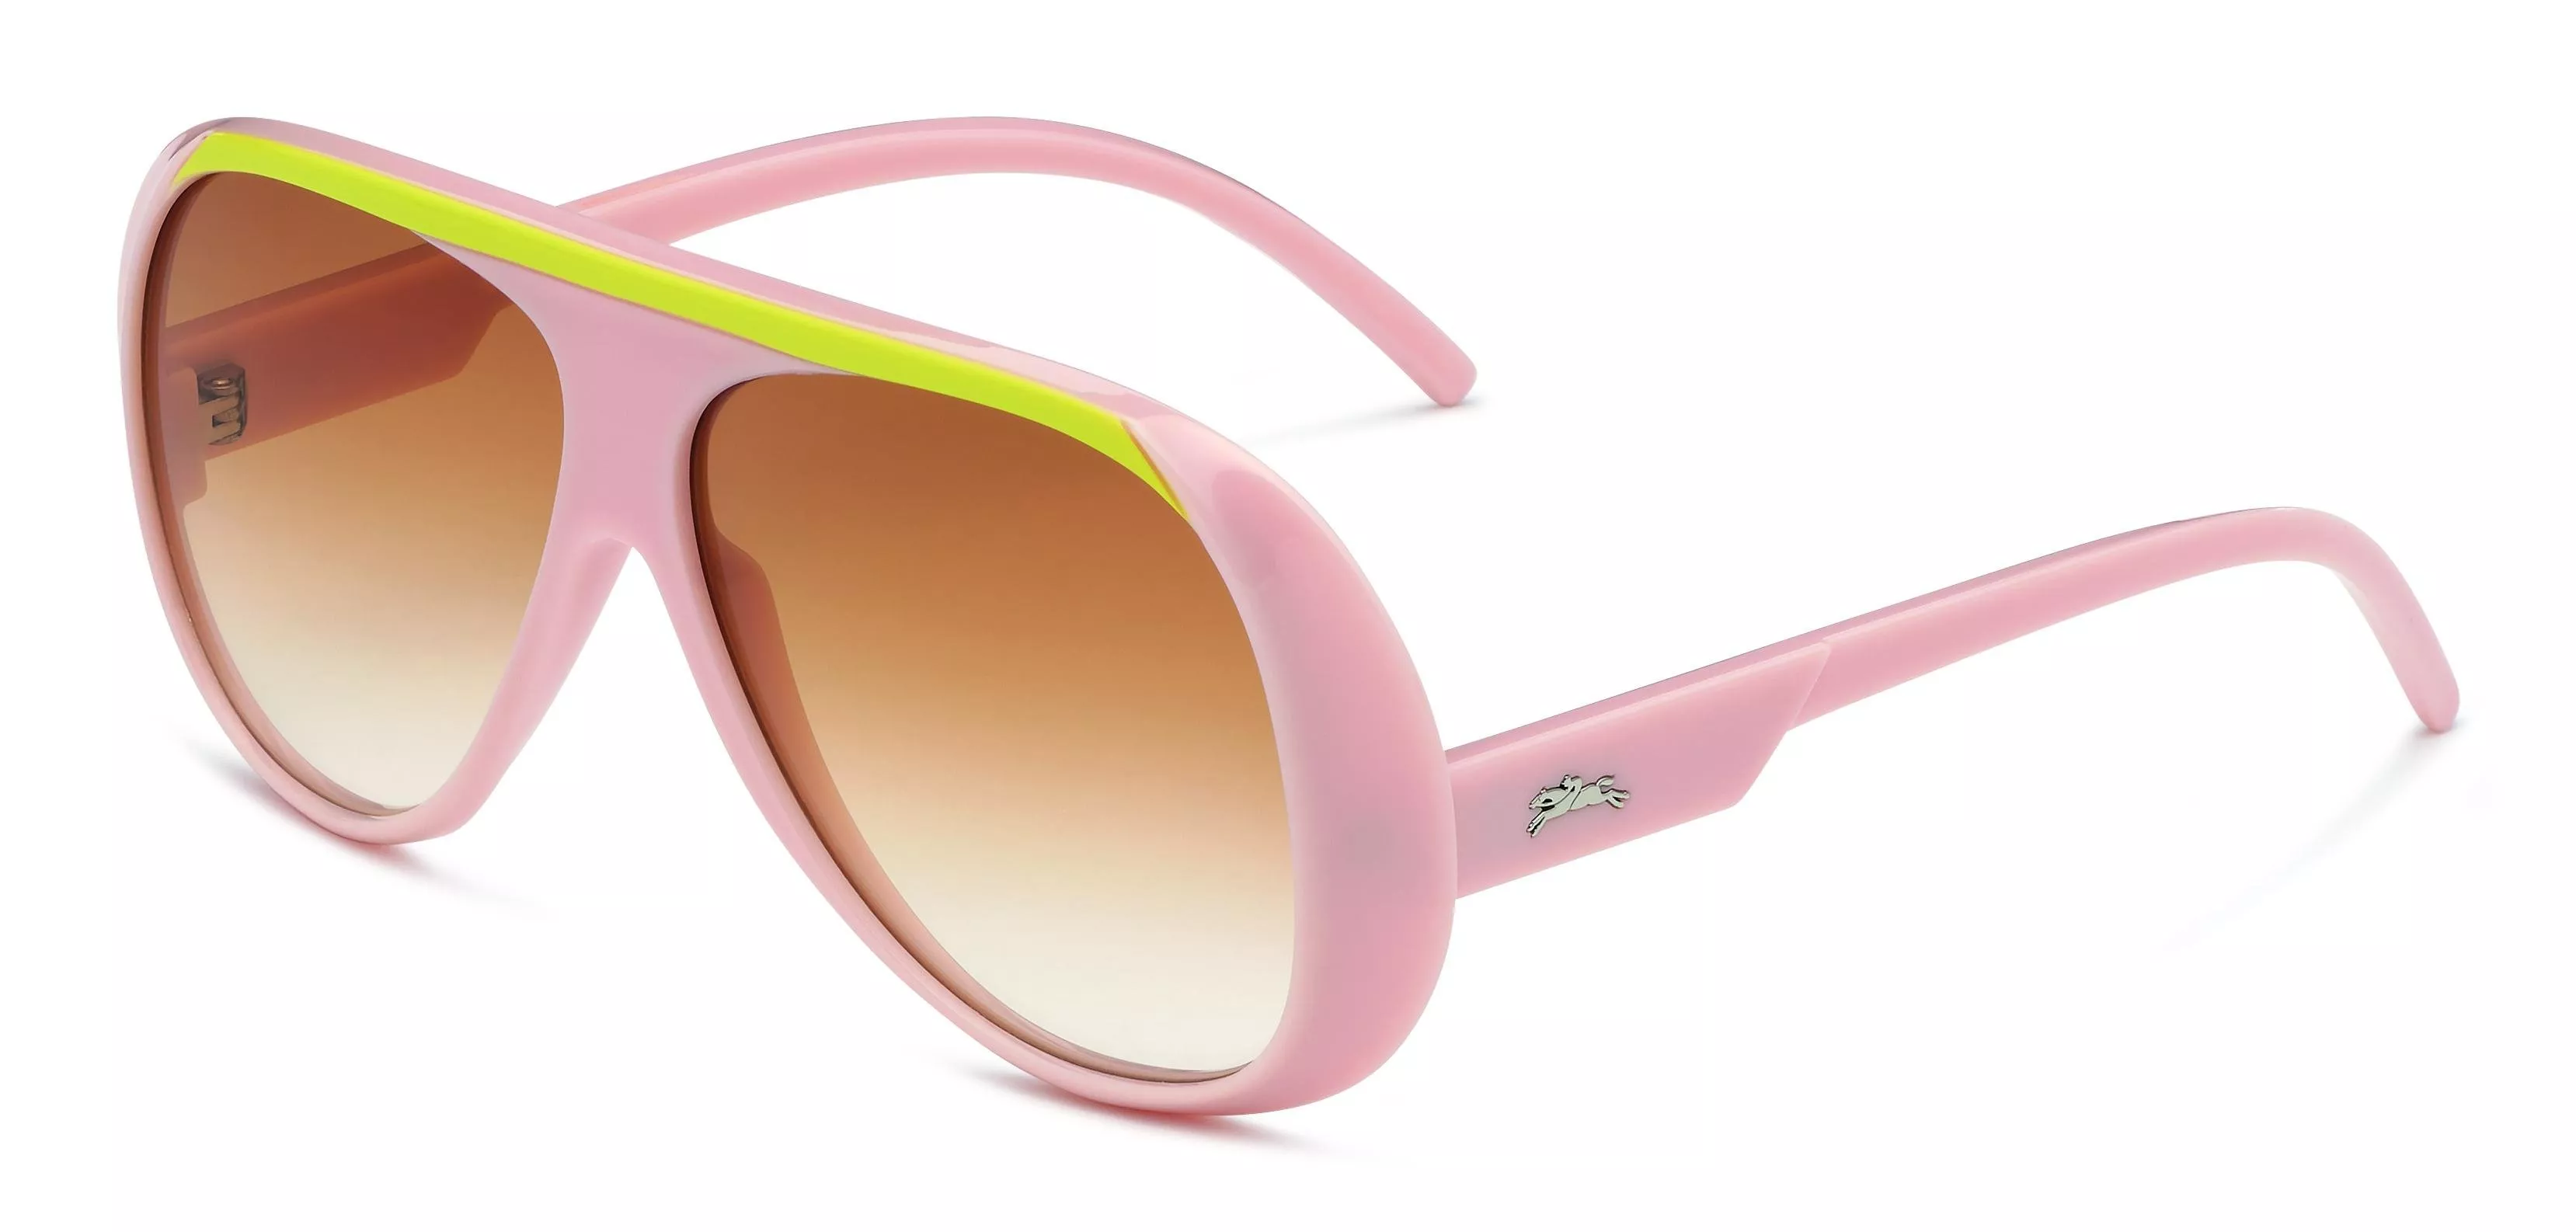 علامة Longchamp تطلق تصميمين جديدين للنظارات لربيع 2020